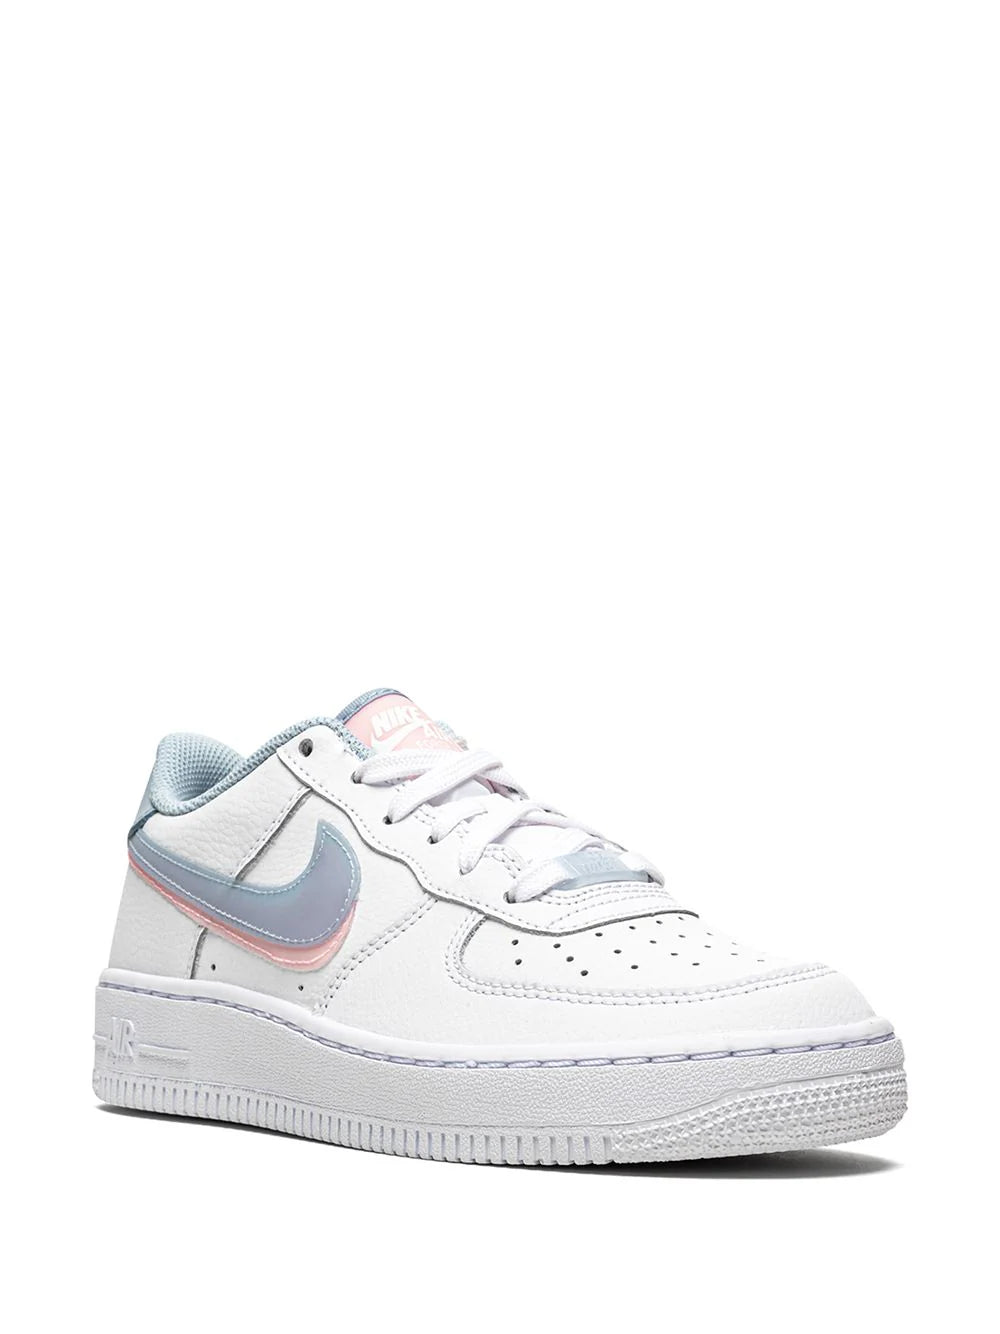 Shoellist | Nike Air Force 1 LV8 sneakers | Women